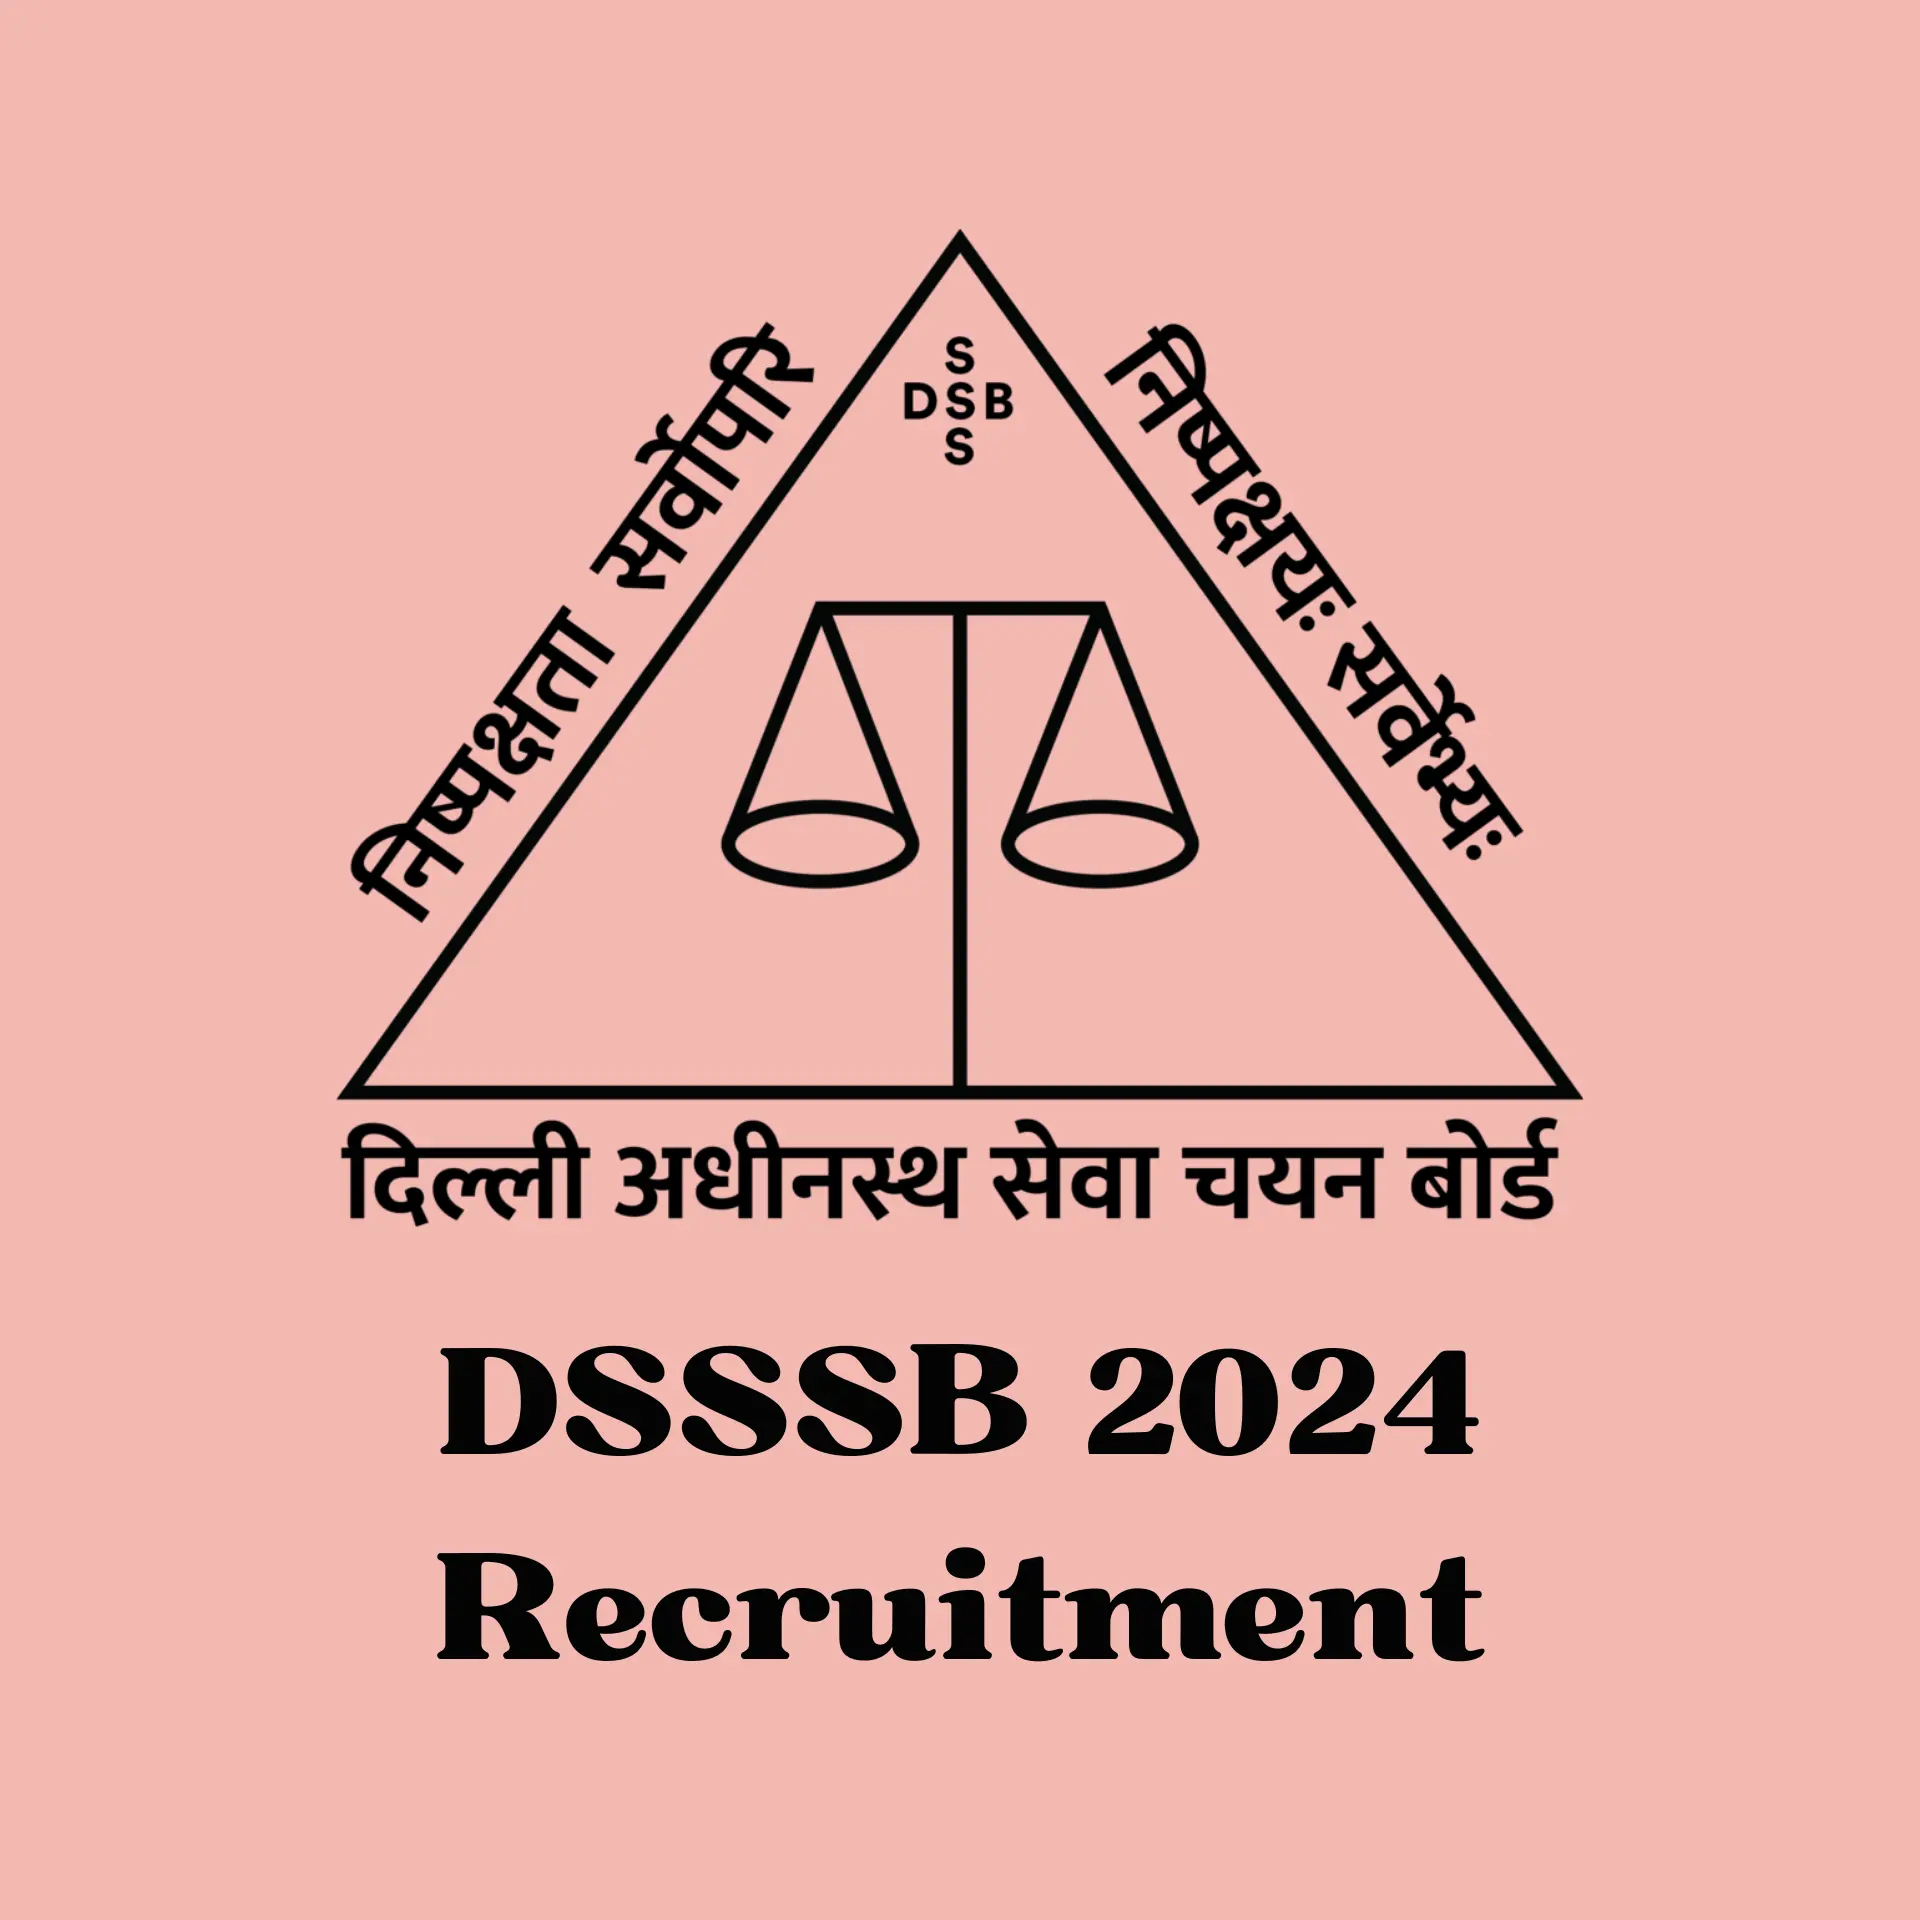 DSSSB 2024 recruitment